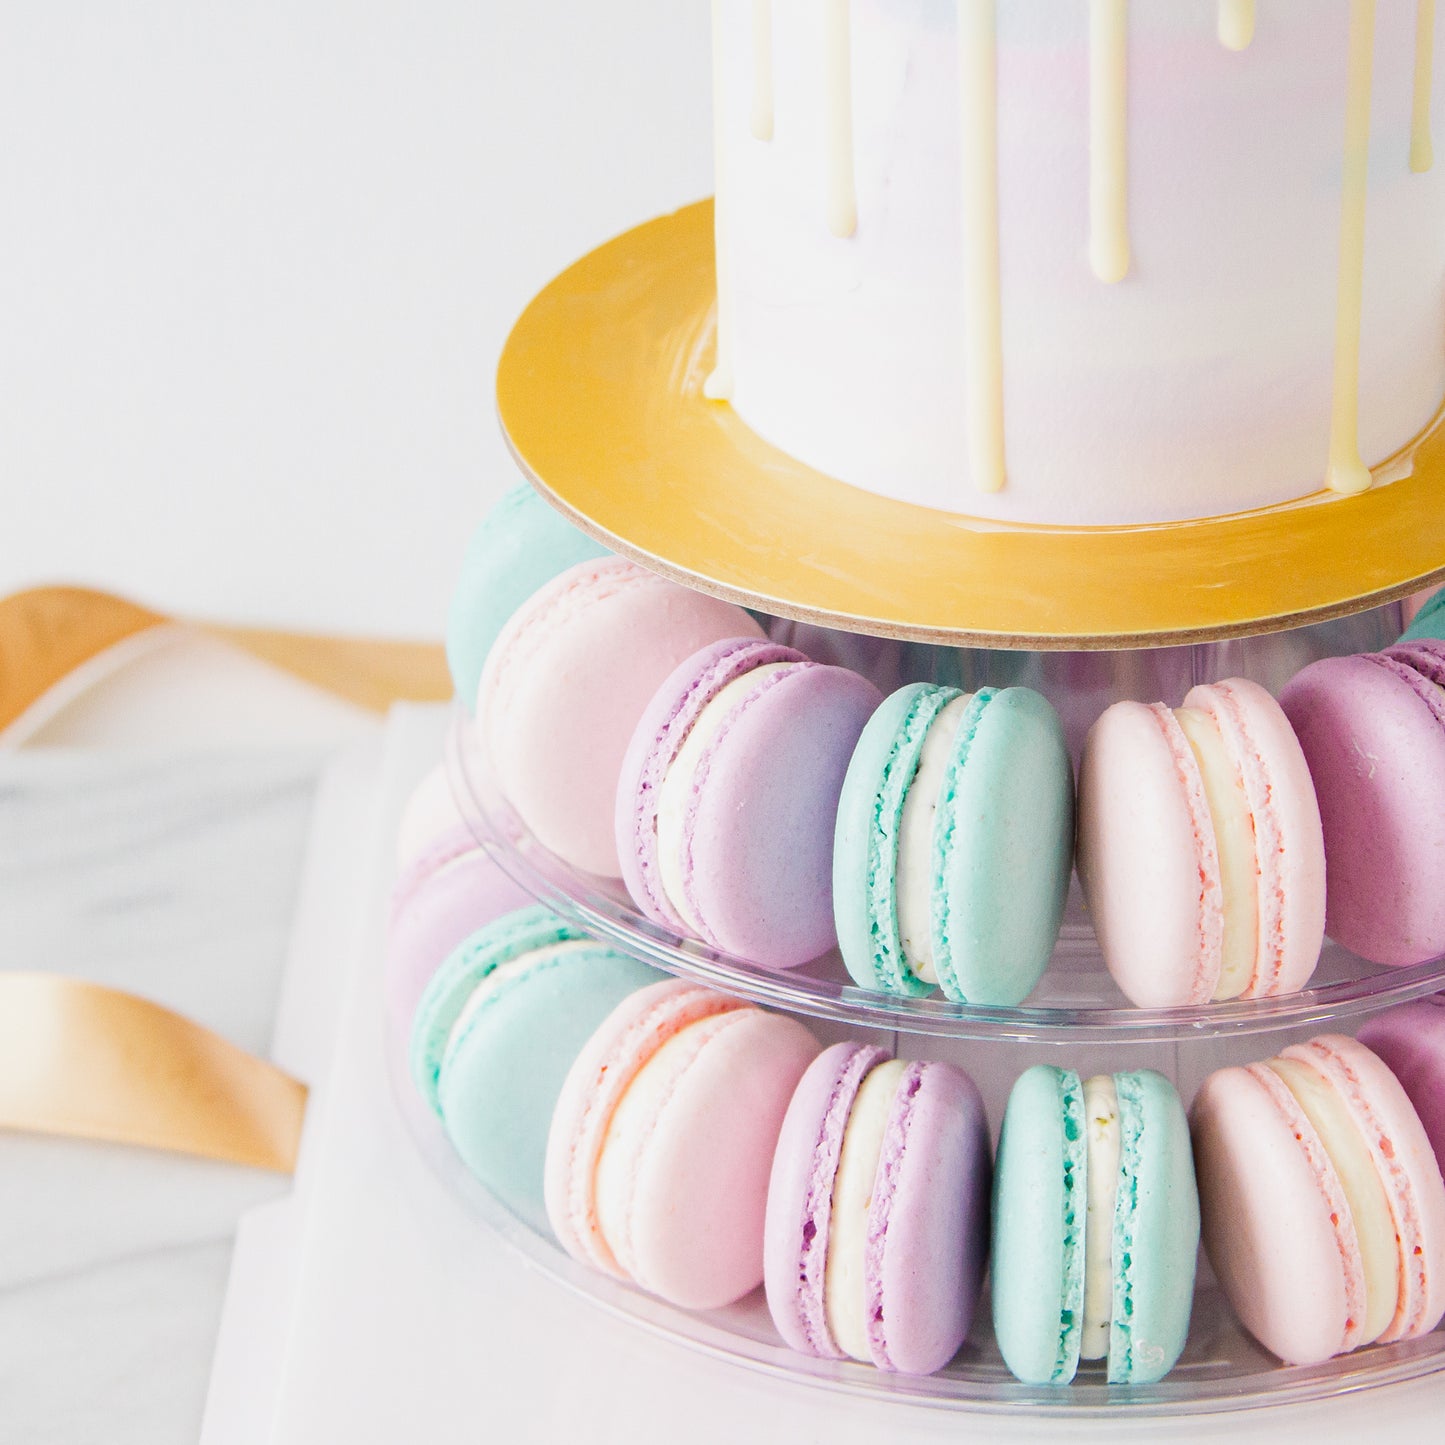 Macaron Cake Tower - Unicorn Cake with 40 pcs macarons - $128 Nett